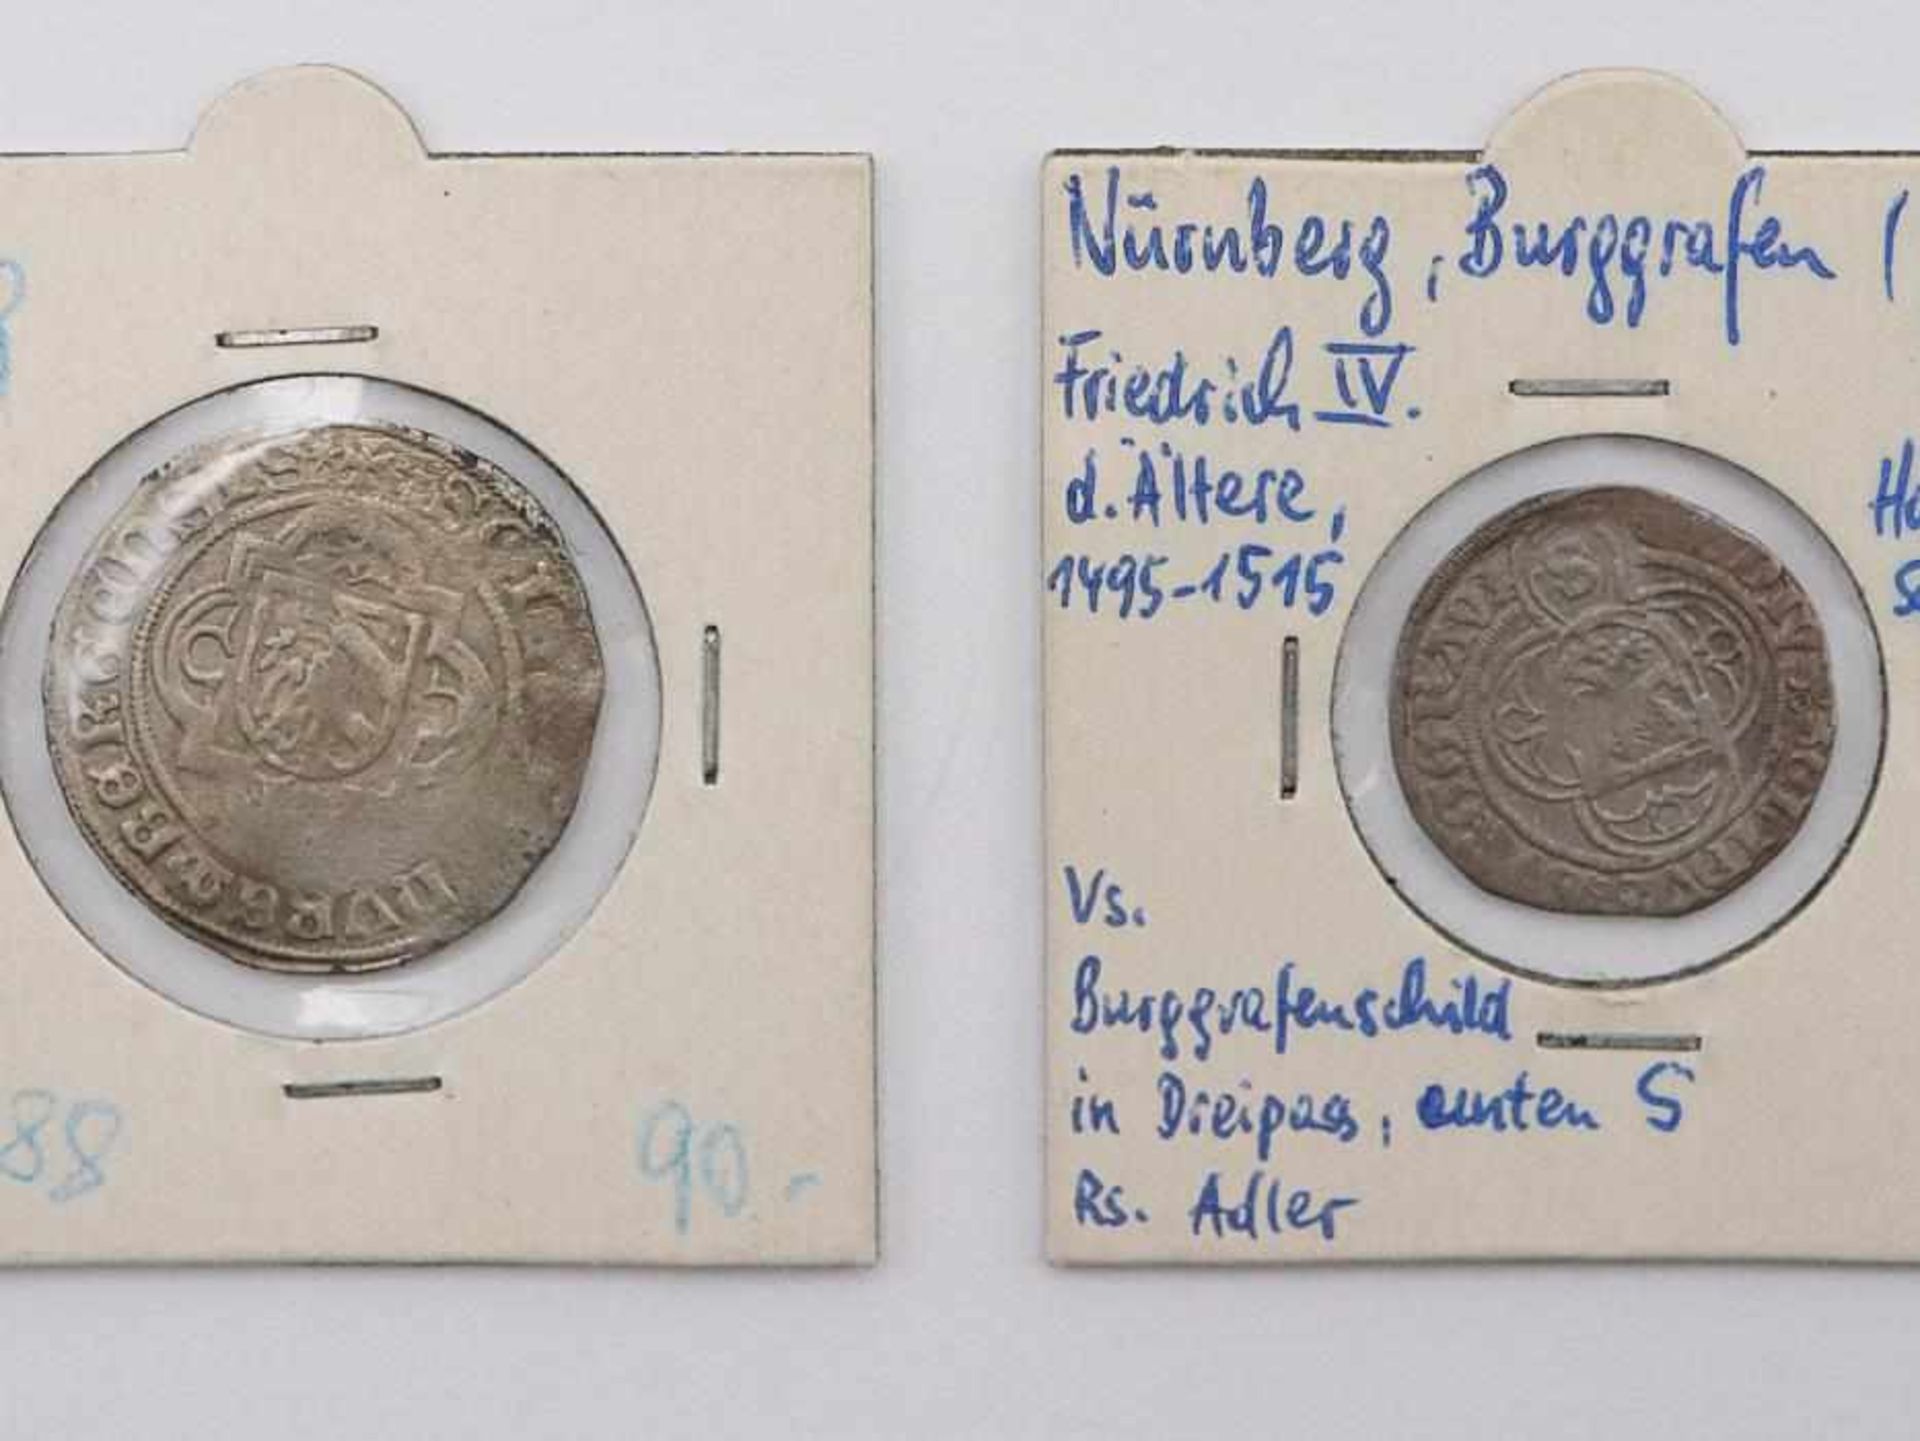 Nürnberg - Zwei Münzen1 x Halbschilling Schwabach Nürnberg Burggrafen Friedrich IV. d. Ältere und - Image 2 of 4